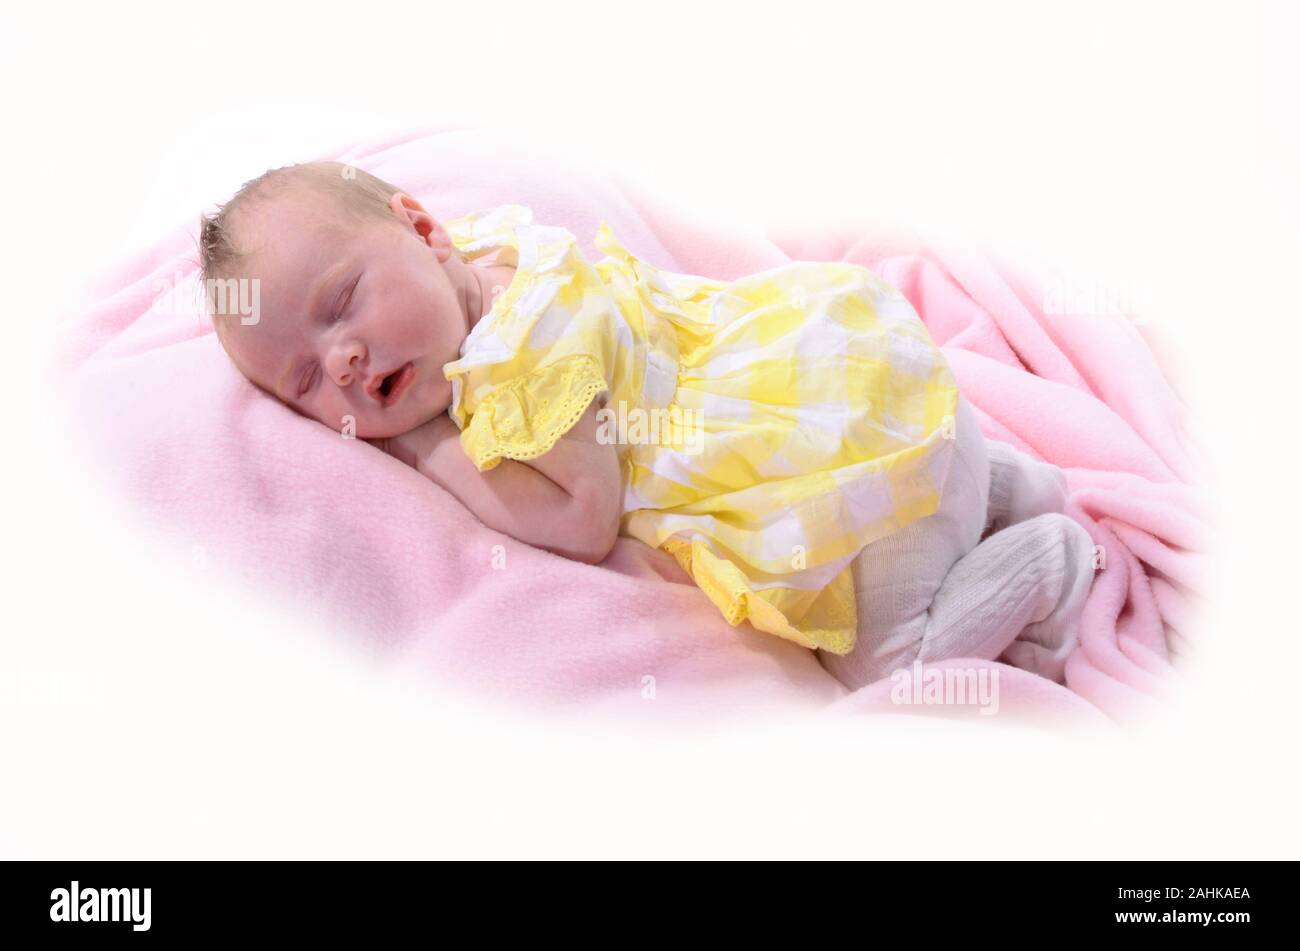 Bébé nouveau-né, petit enfant Banque D'Images